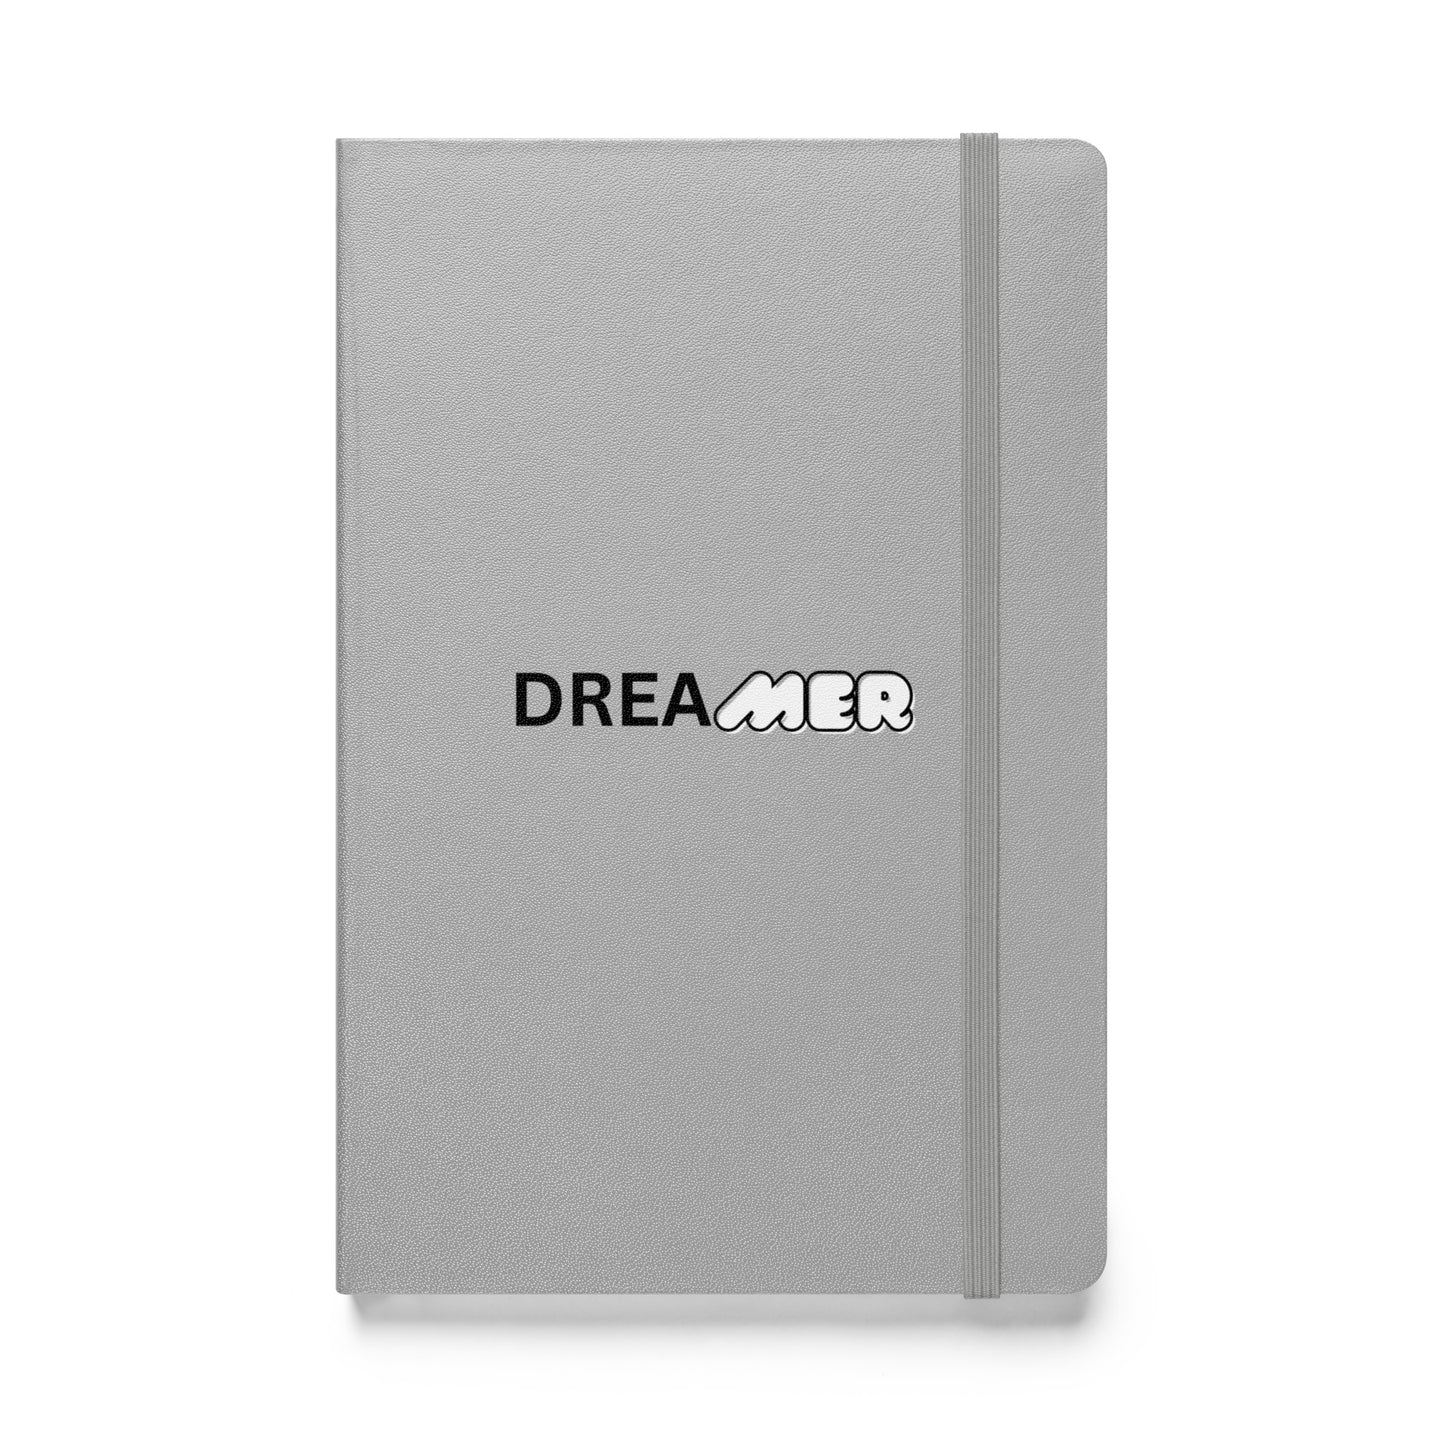 Dreamer Hardcover Notebook